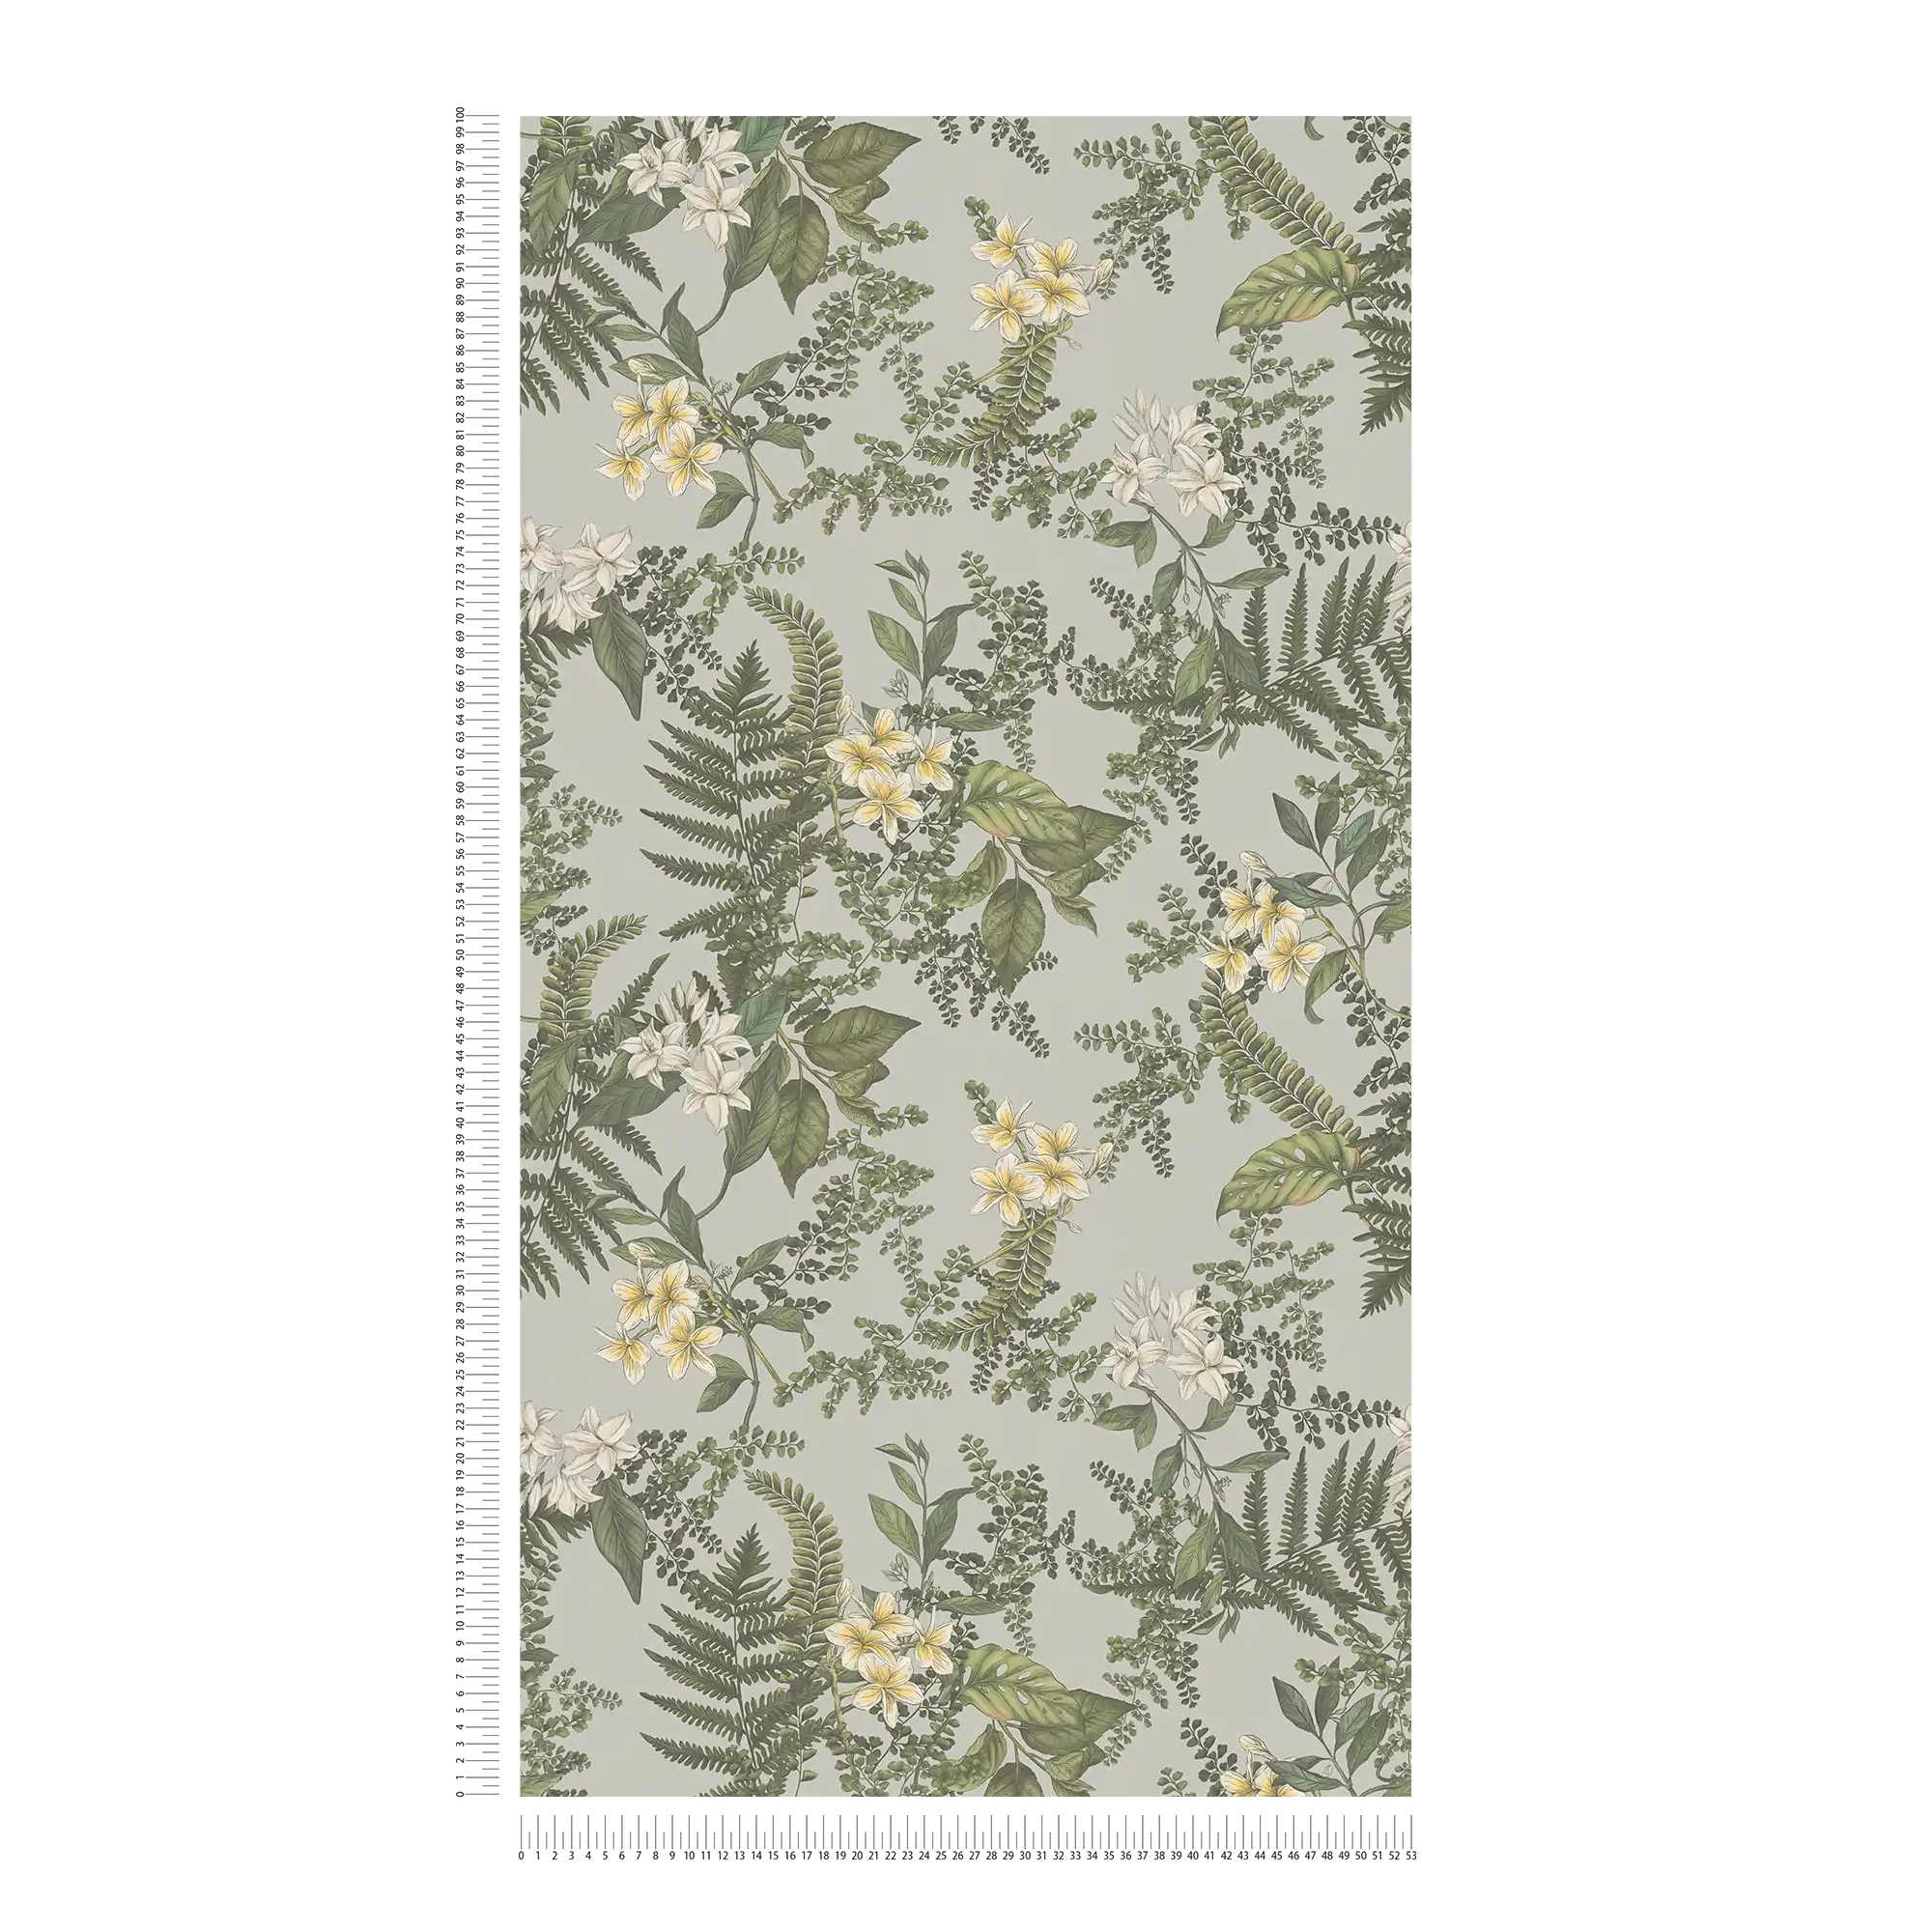             Carta da parati moderna in stile floreale con fiori ed erbe testurizzate opache - grigio, verde scuro, bianco
        